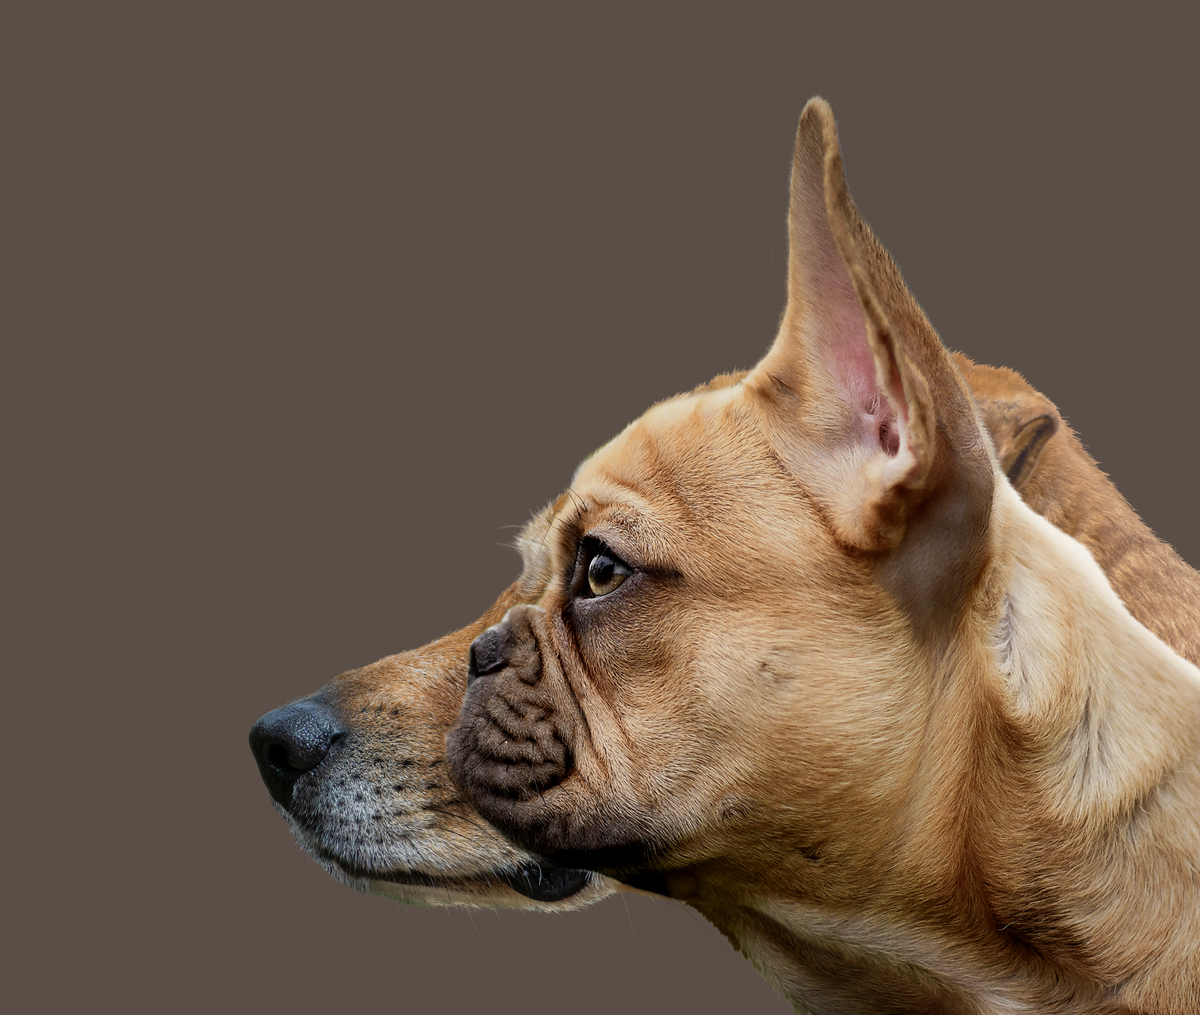 Illustration af forskel på længde af snude fra flad- til langsnudet hund.